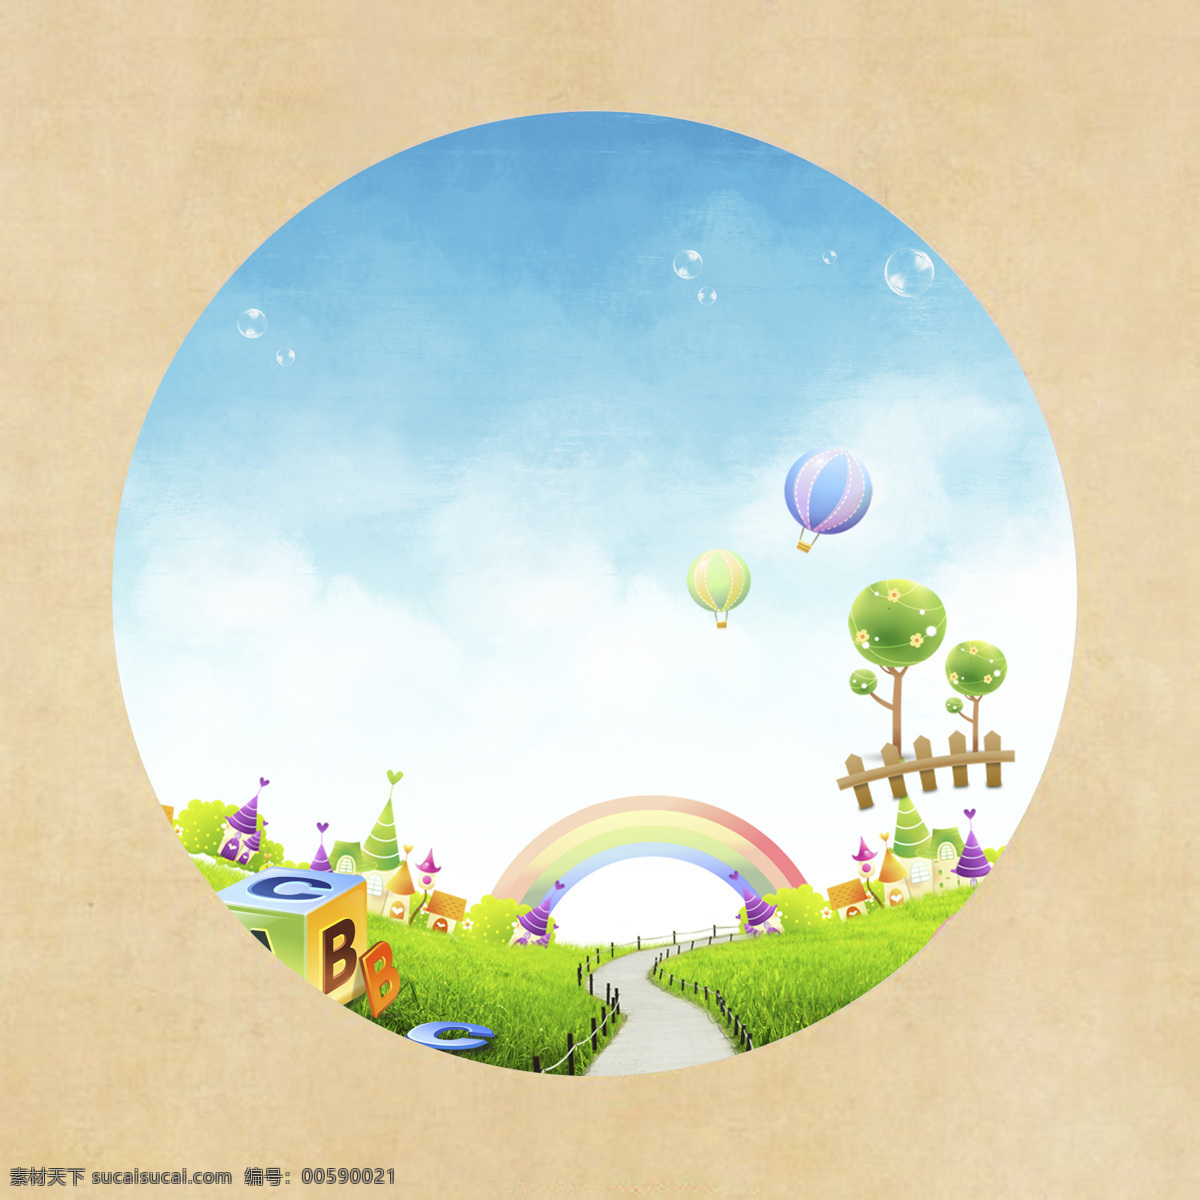 风景画 卡通 形象 abc 彩虹 热气球 气泡 树 栅栏 小屋 乡间小路 白色